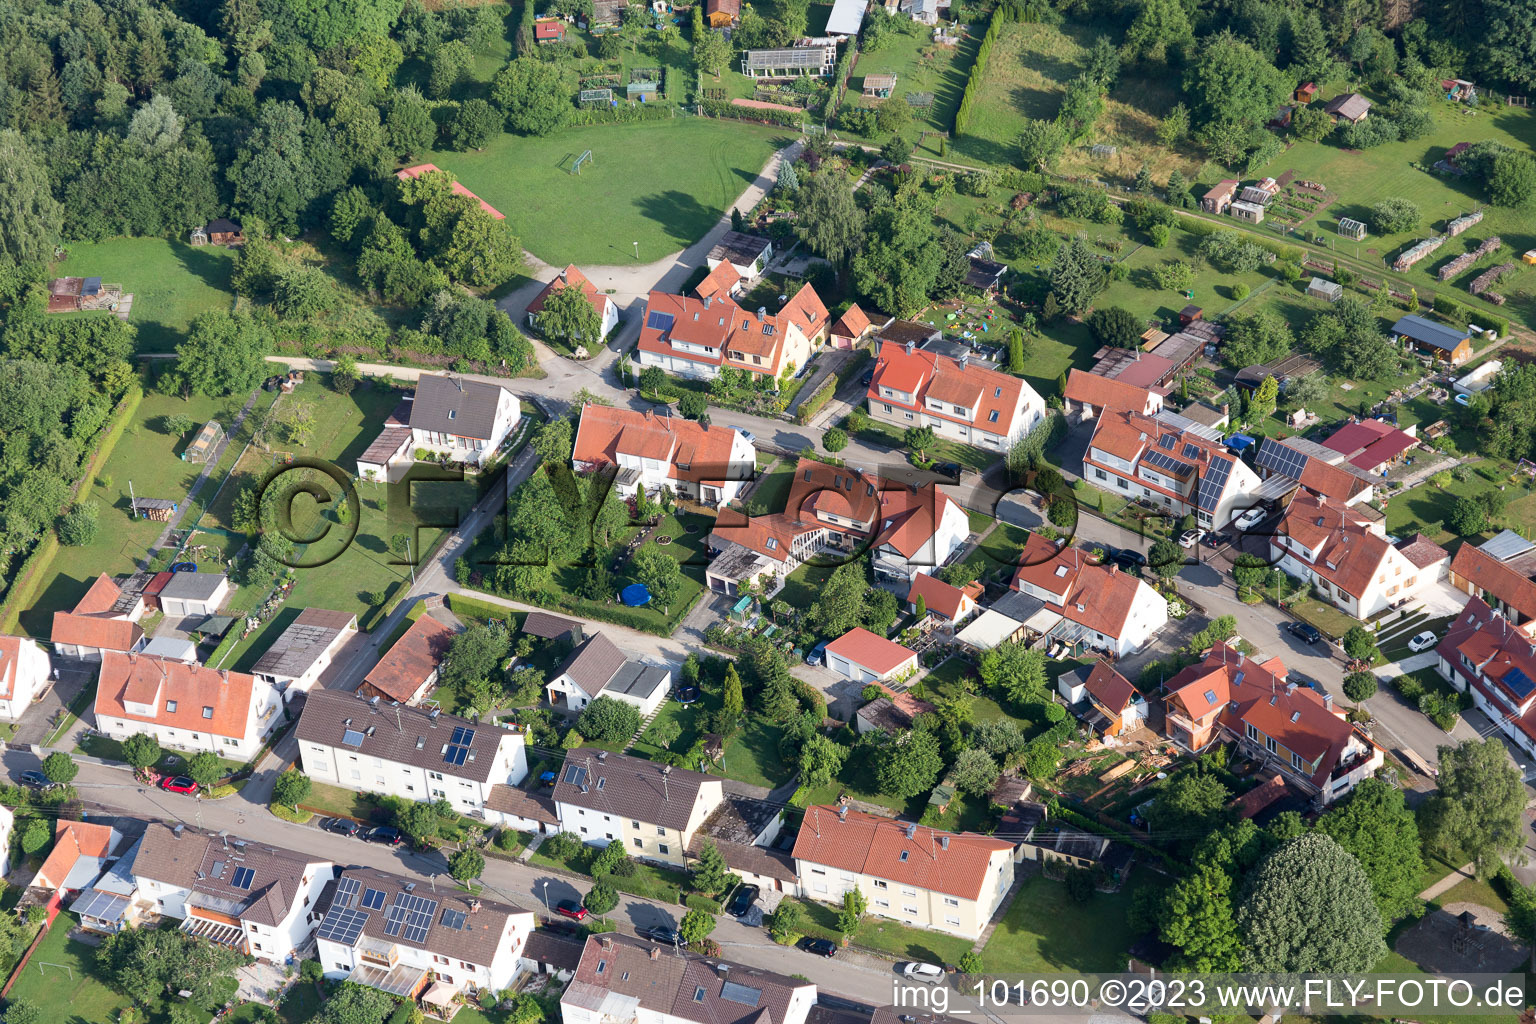 Luftbild von Riedlingen im Bundesland Bayern, Deutschland